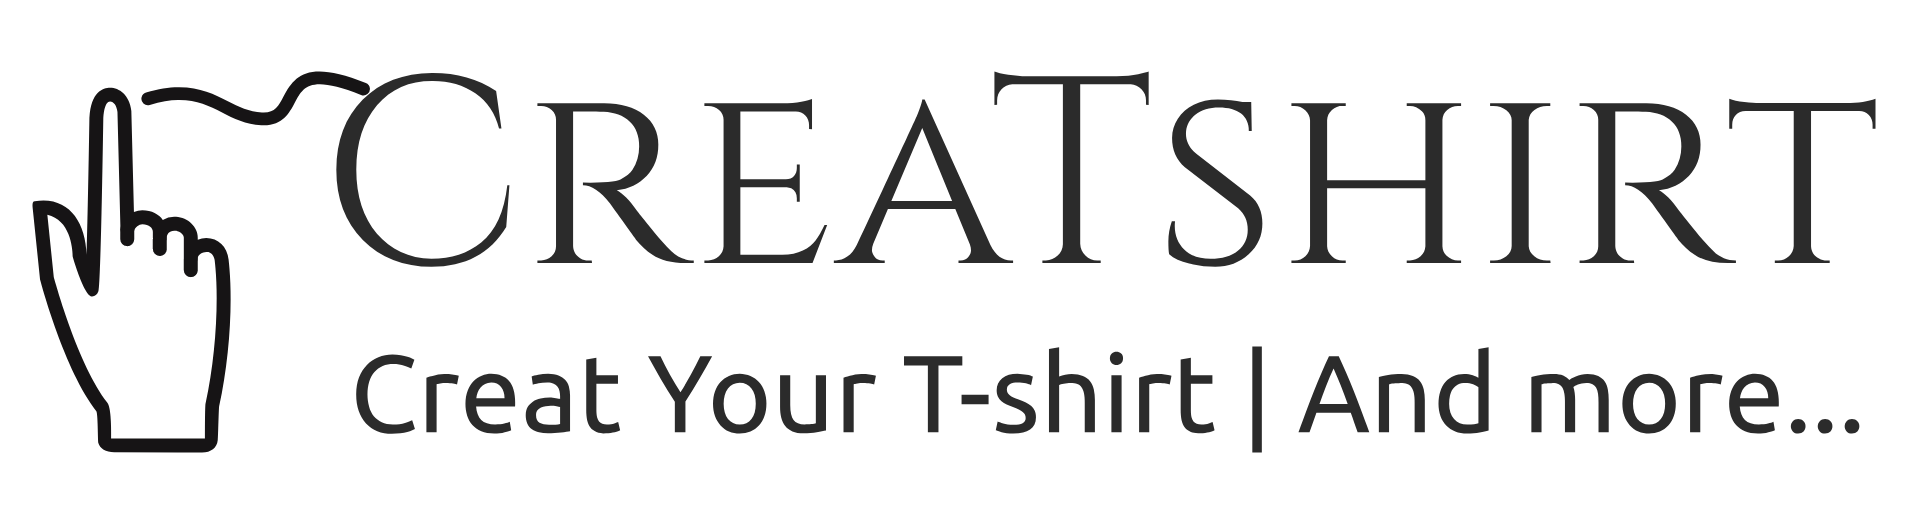 CreaTshirt